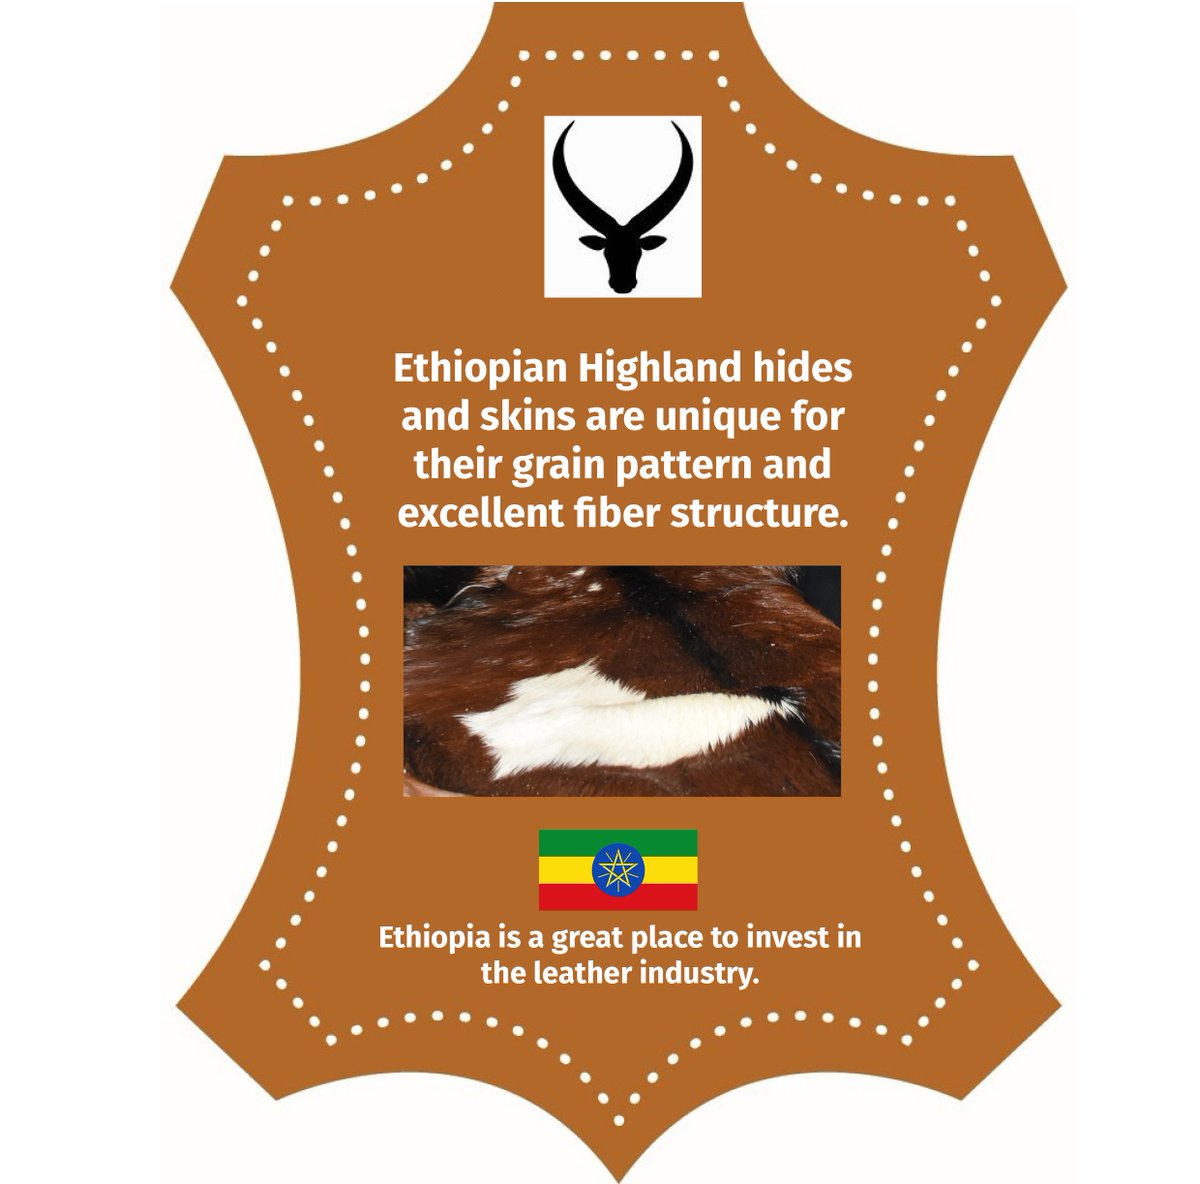 #leathervaluechain #leathers #leathergoods 
@EthioInvestment @LeatherLidi @LeatherEthiopia 
@Yassin_Awale